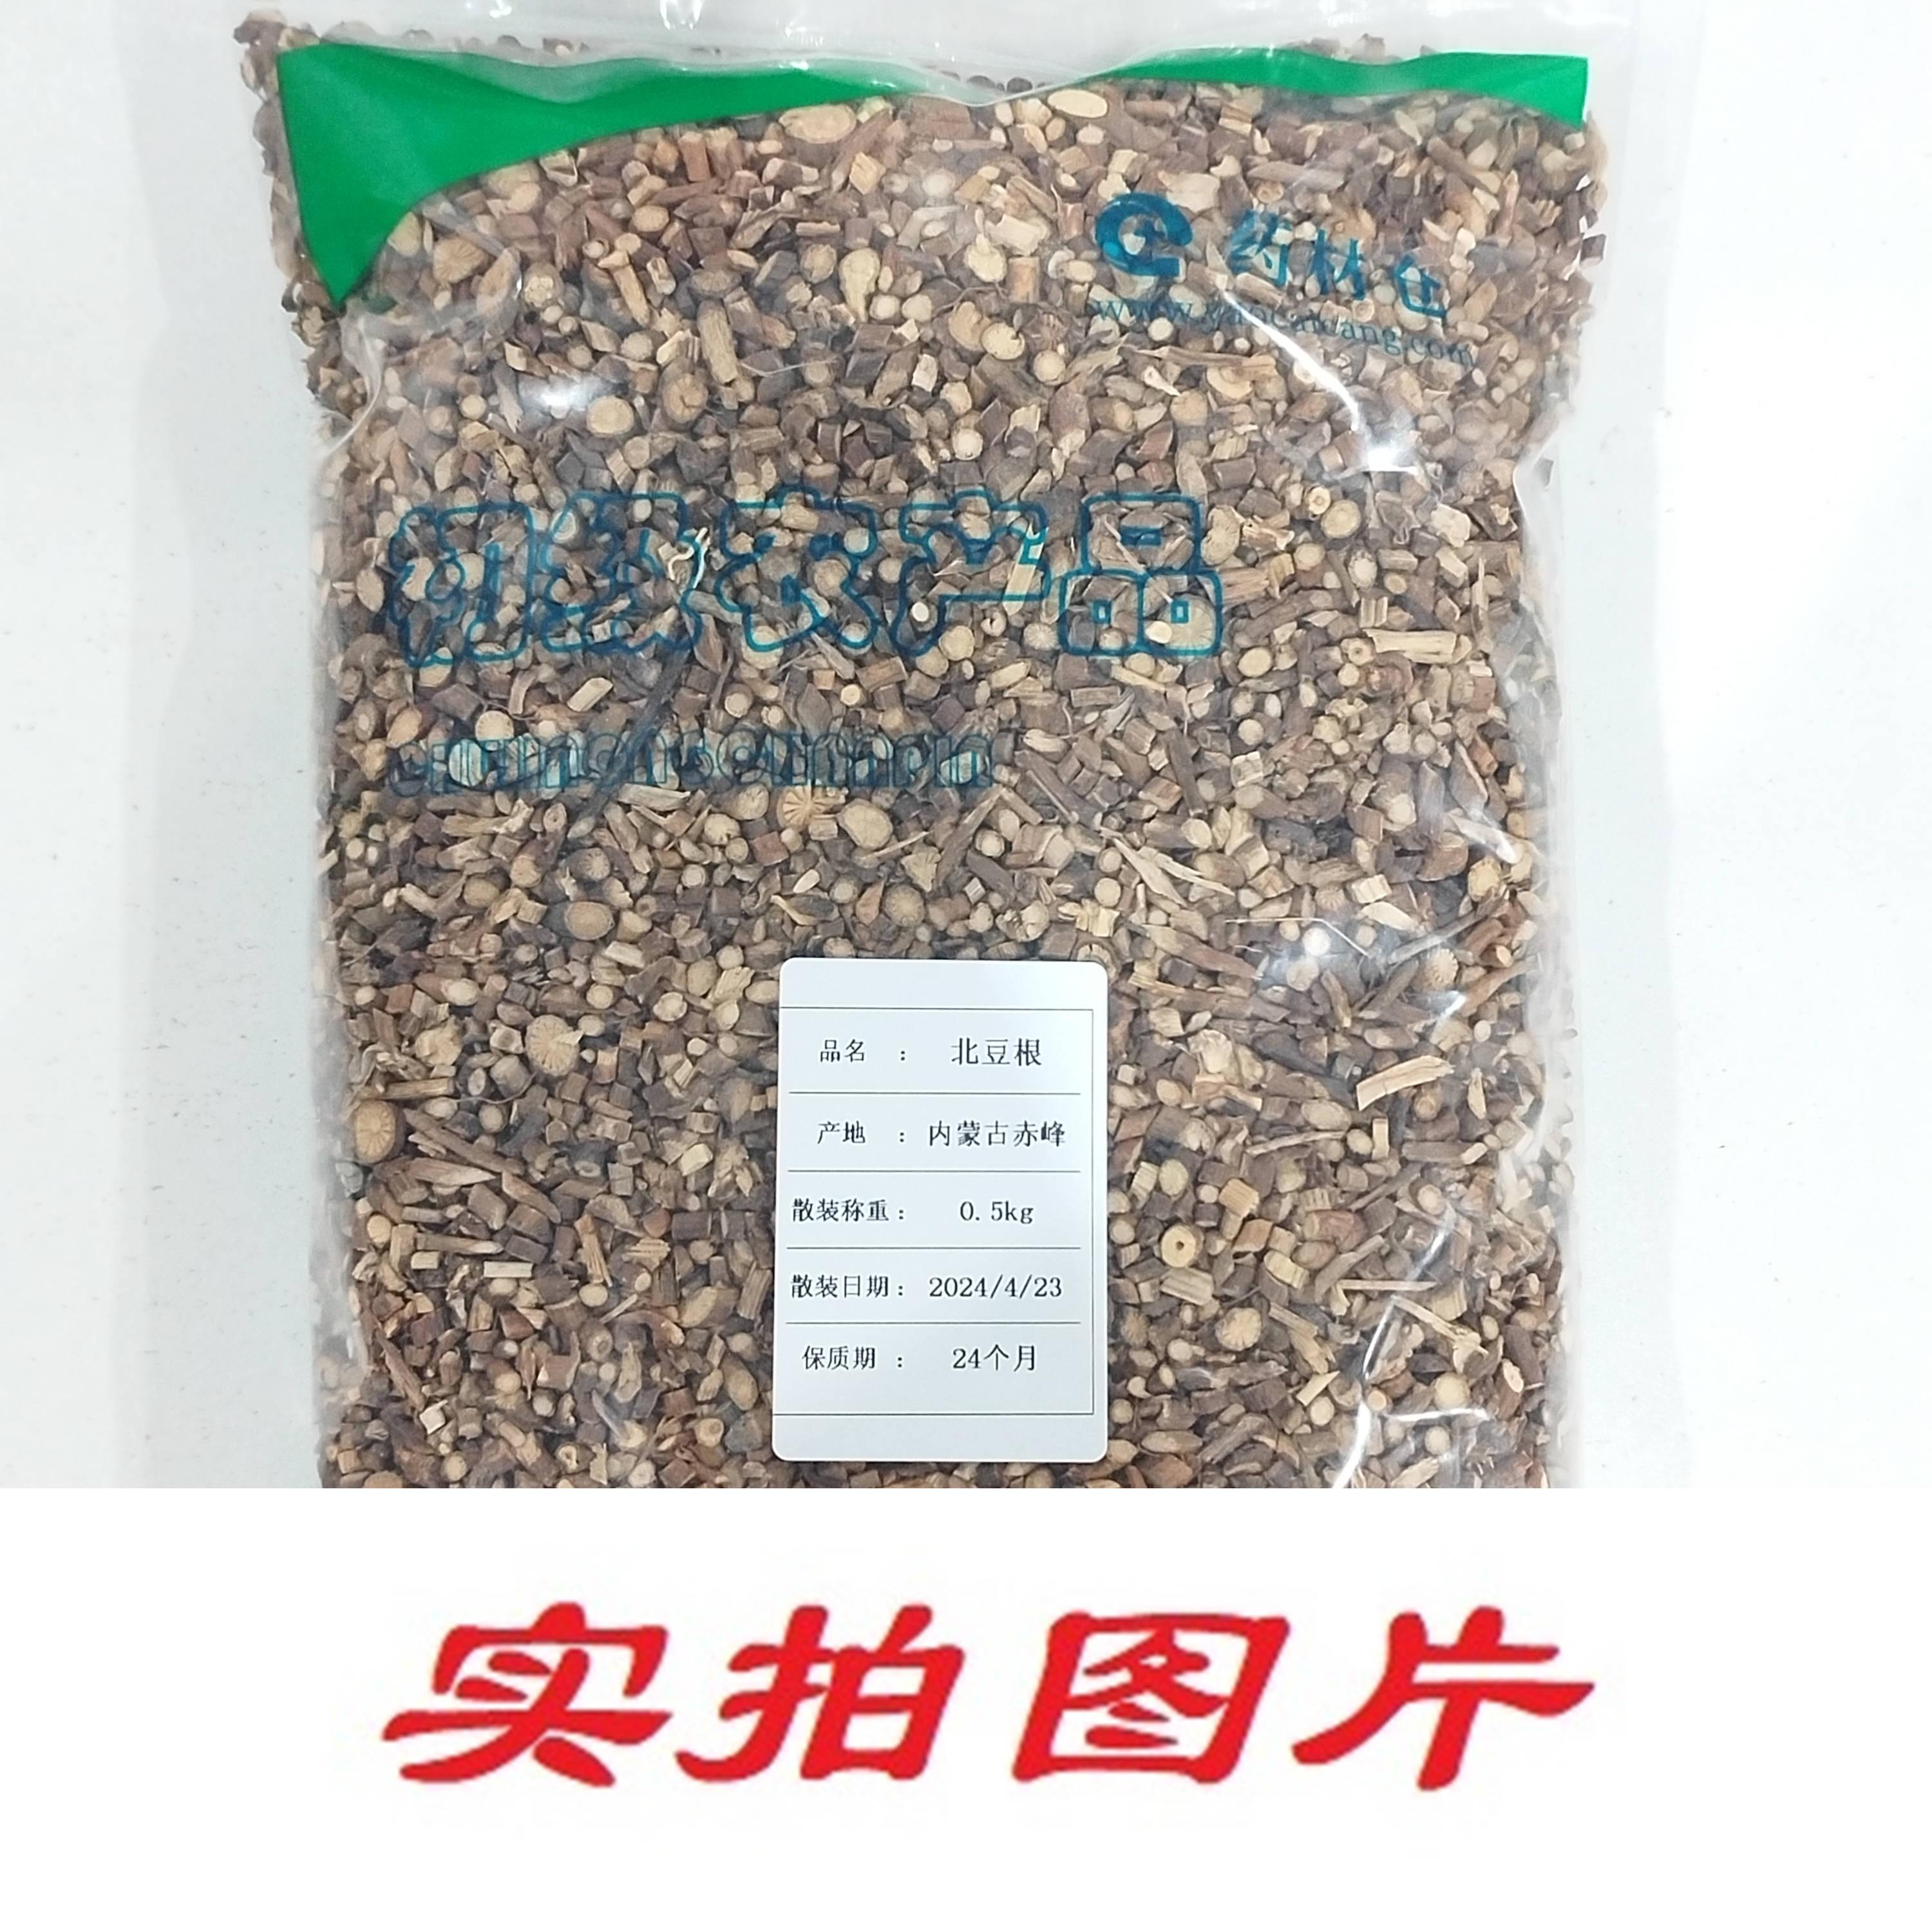 【】北豆根0.5kg-农副产品